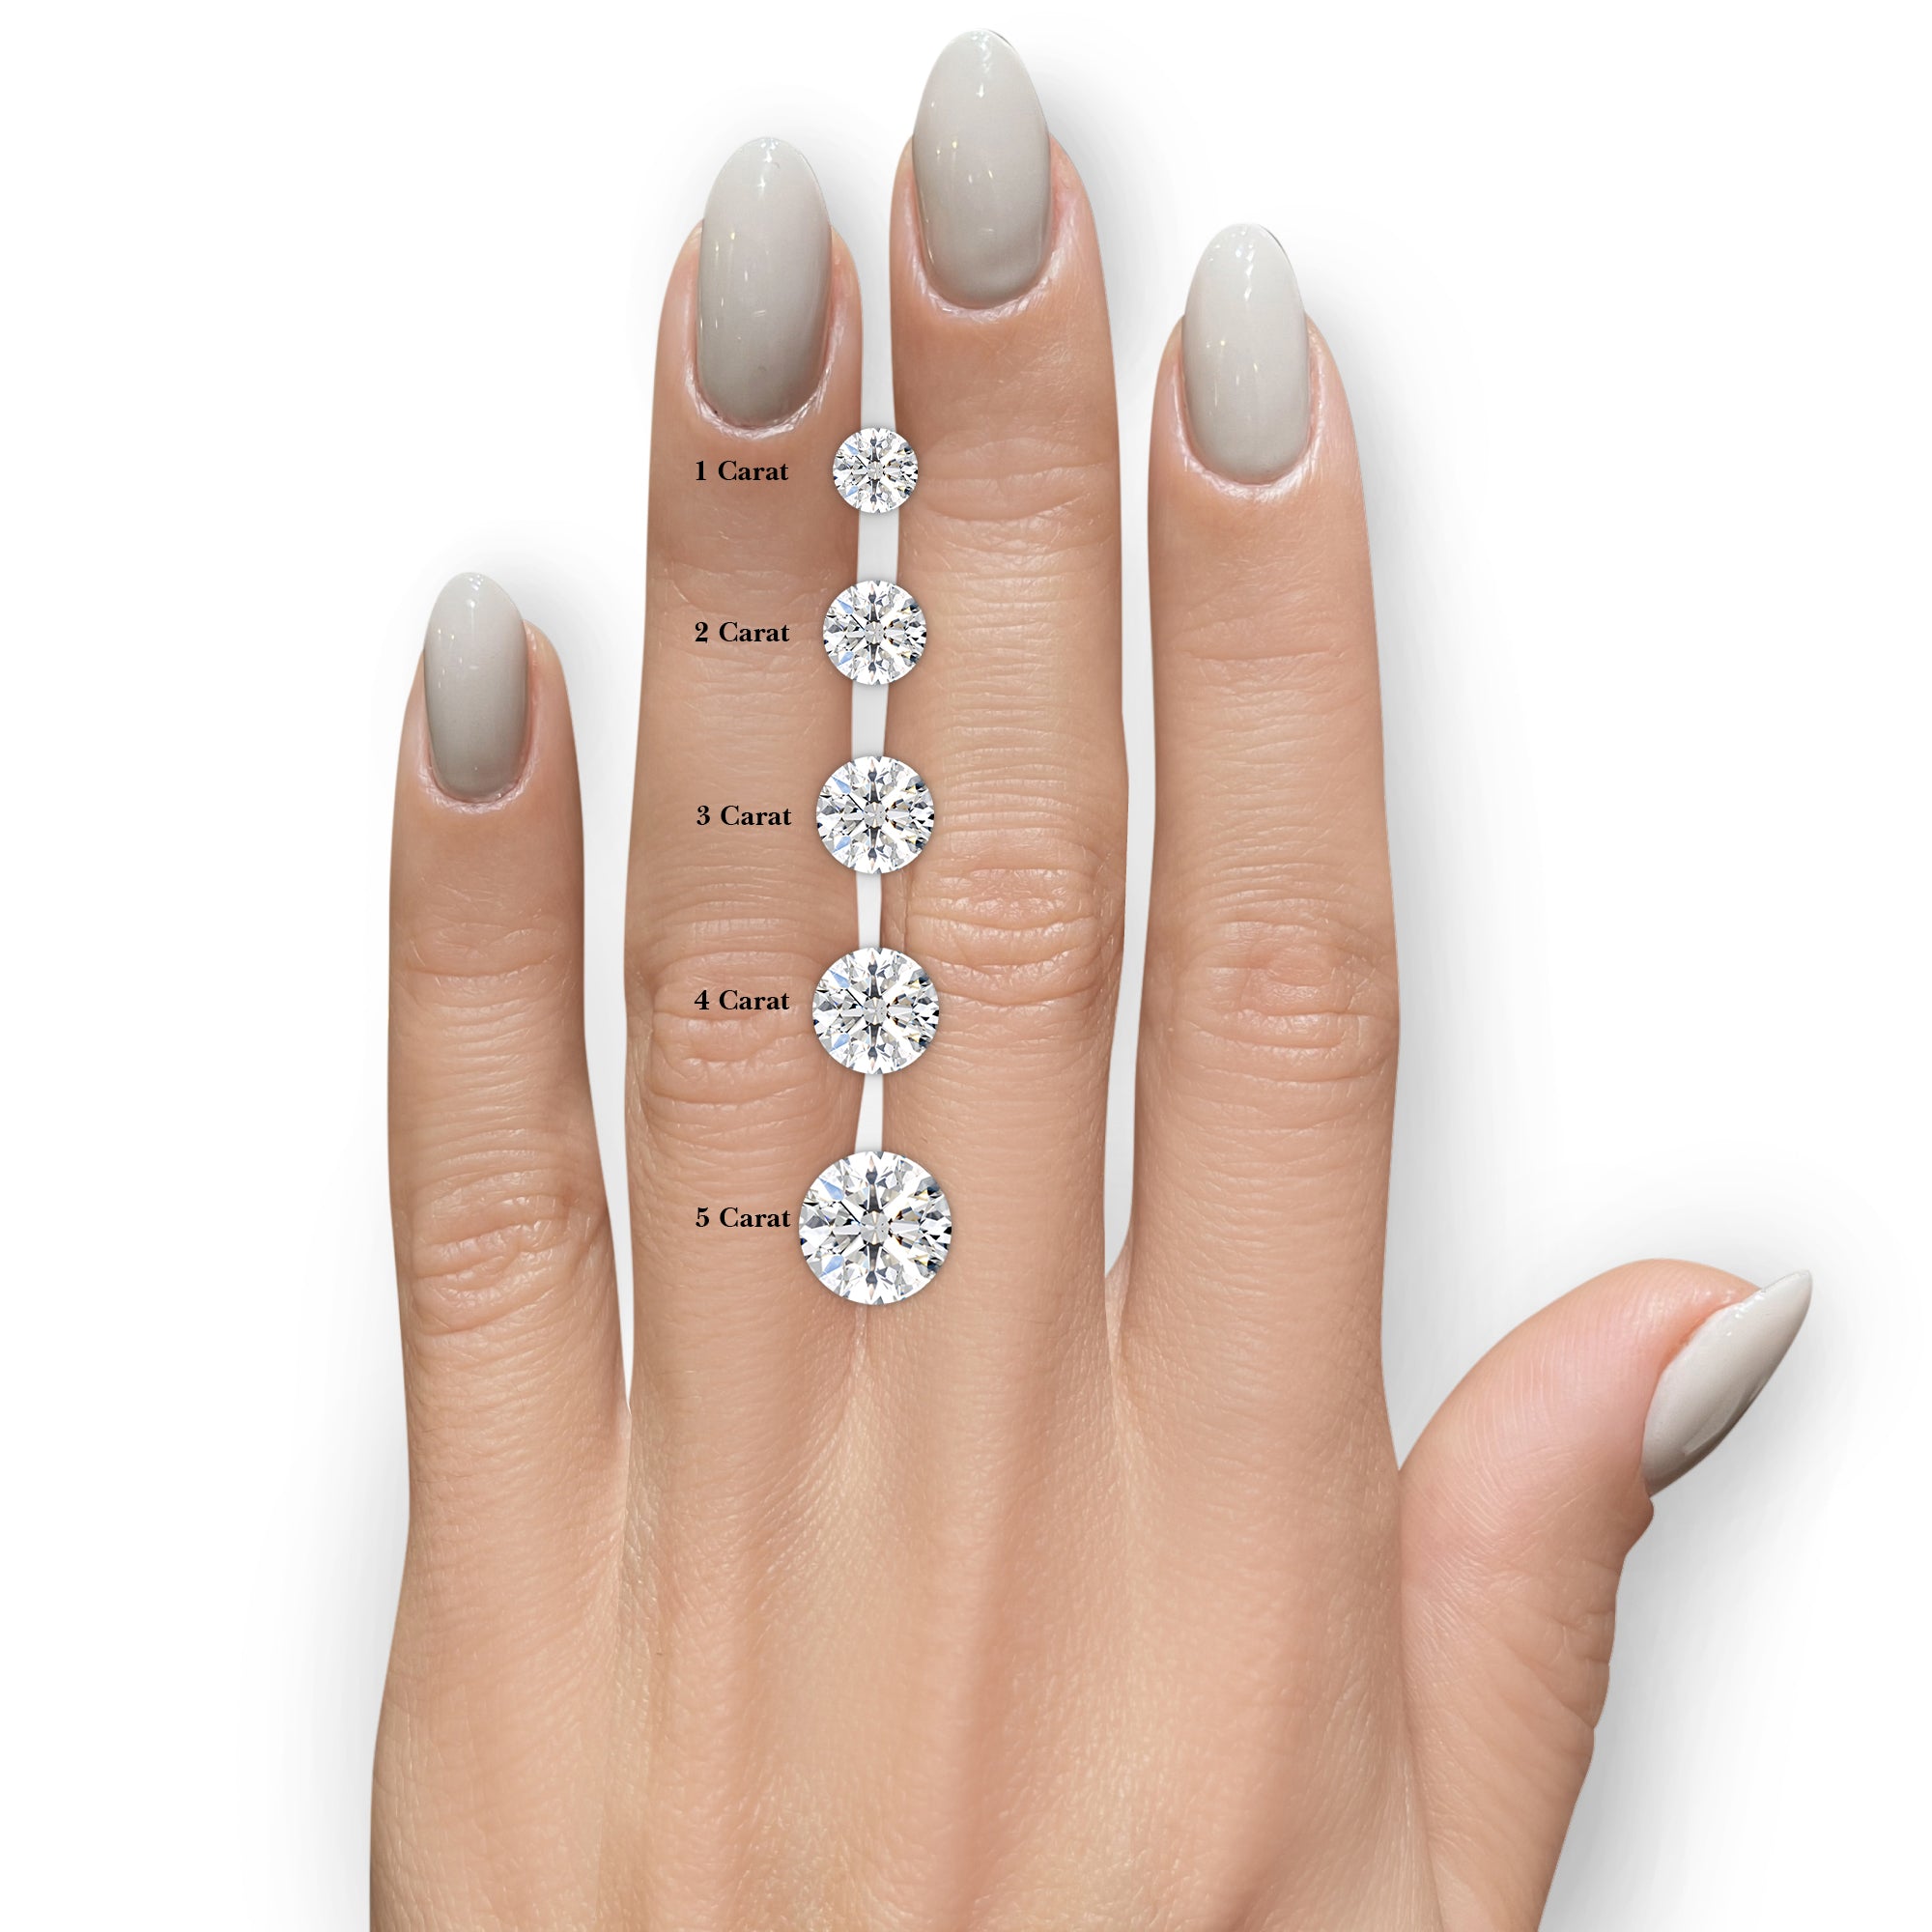 Anne Moissanite & Diamonds Ring -14K White Gold